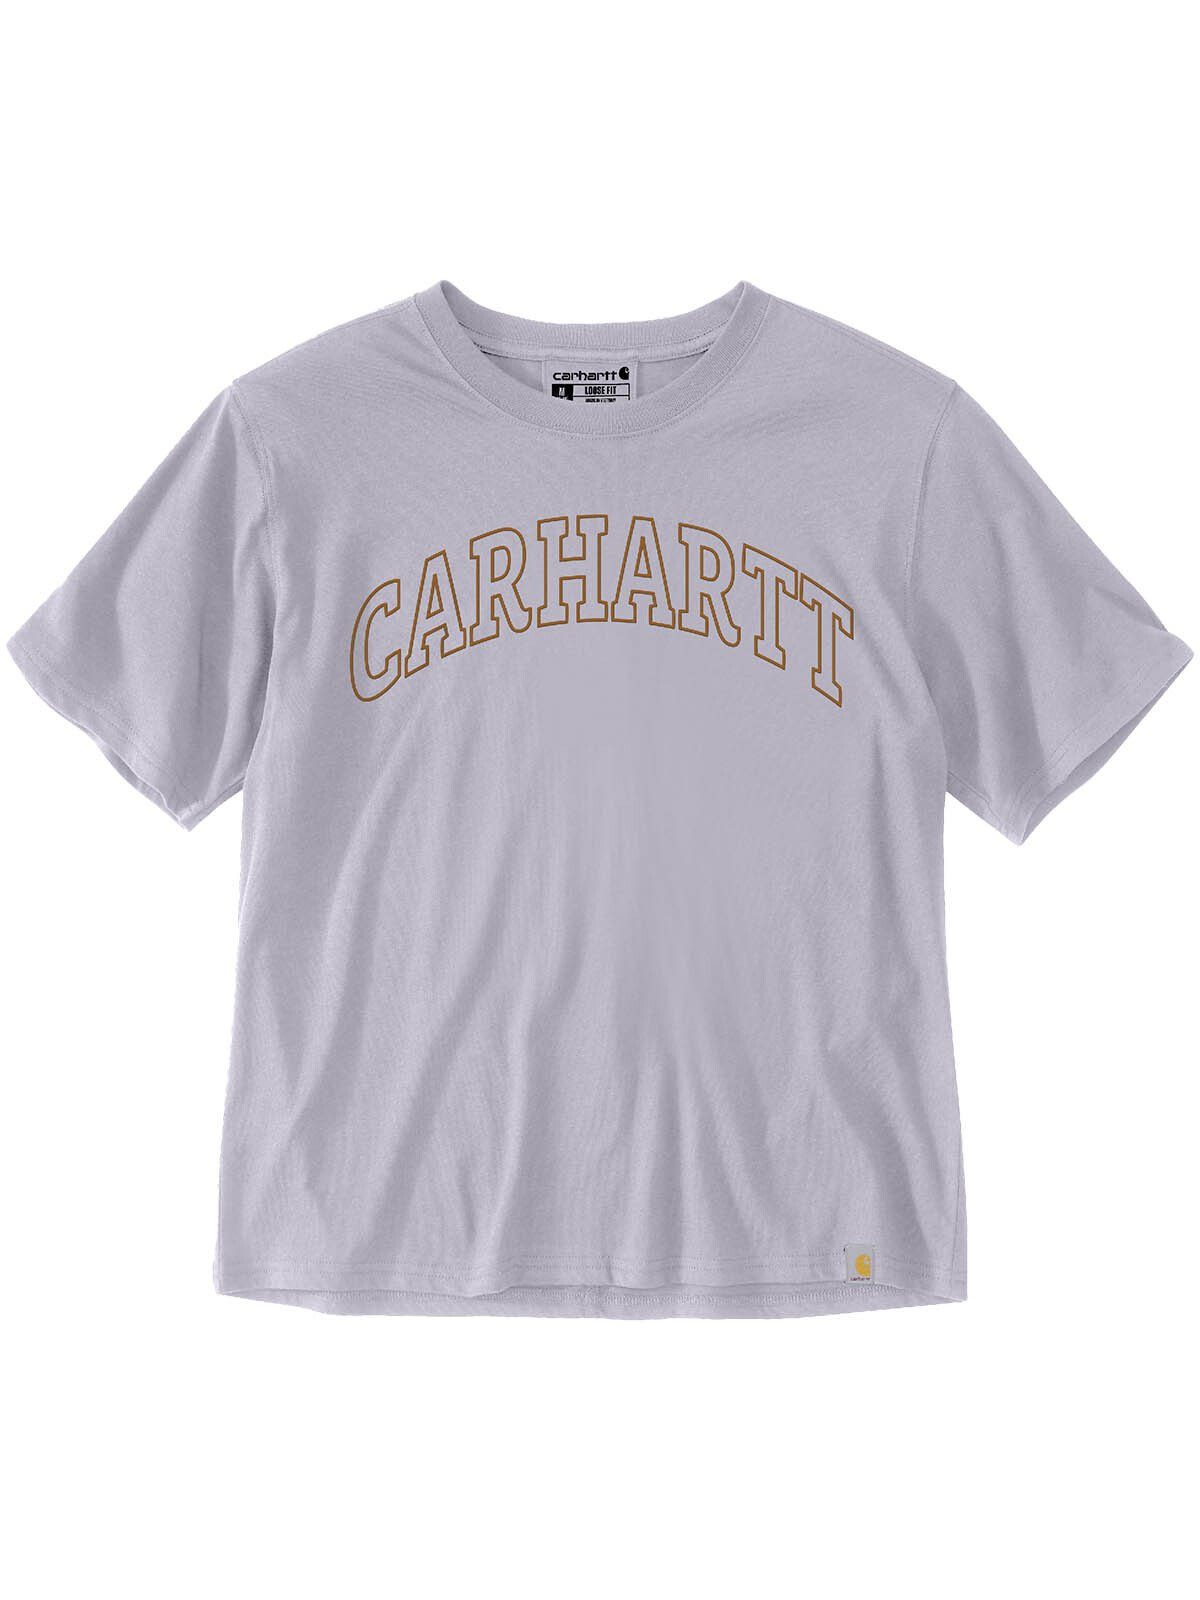 Carhartt T-Shirt 106186-V62 Carhartt Graphic